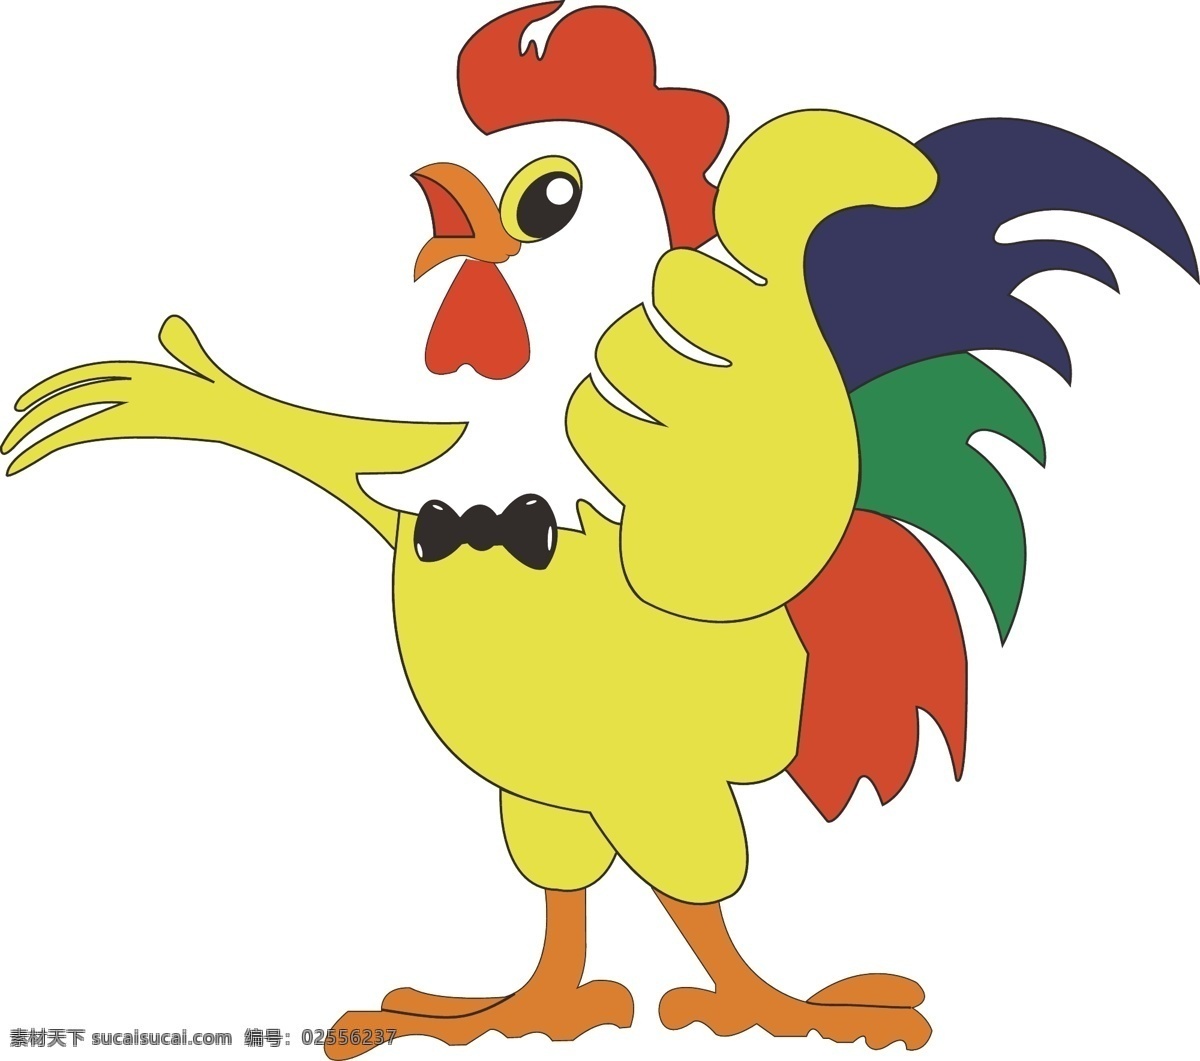 鸡卡通图 鸡 小鸡 卡通图 鸡矢量图 鸡年 鸡插画 可爱鸡 卡通鸡 原创类 卡通设计